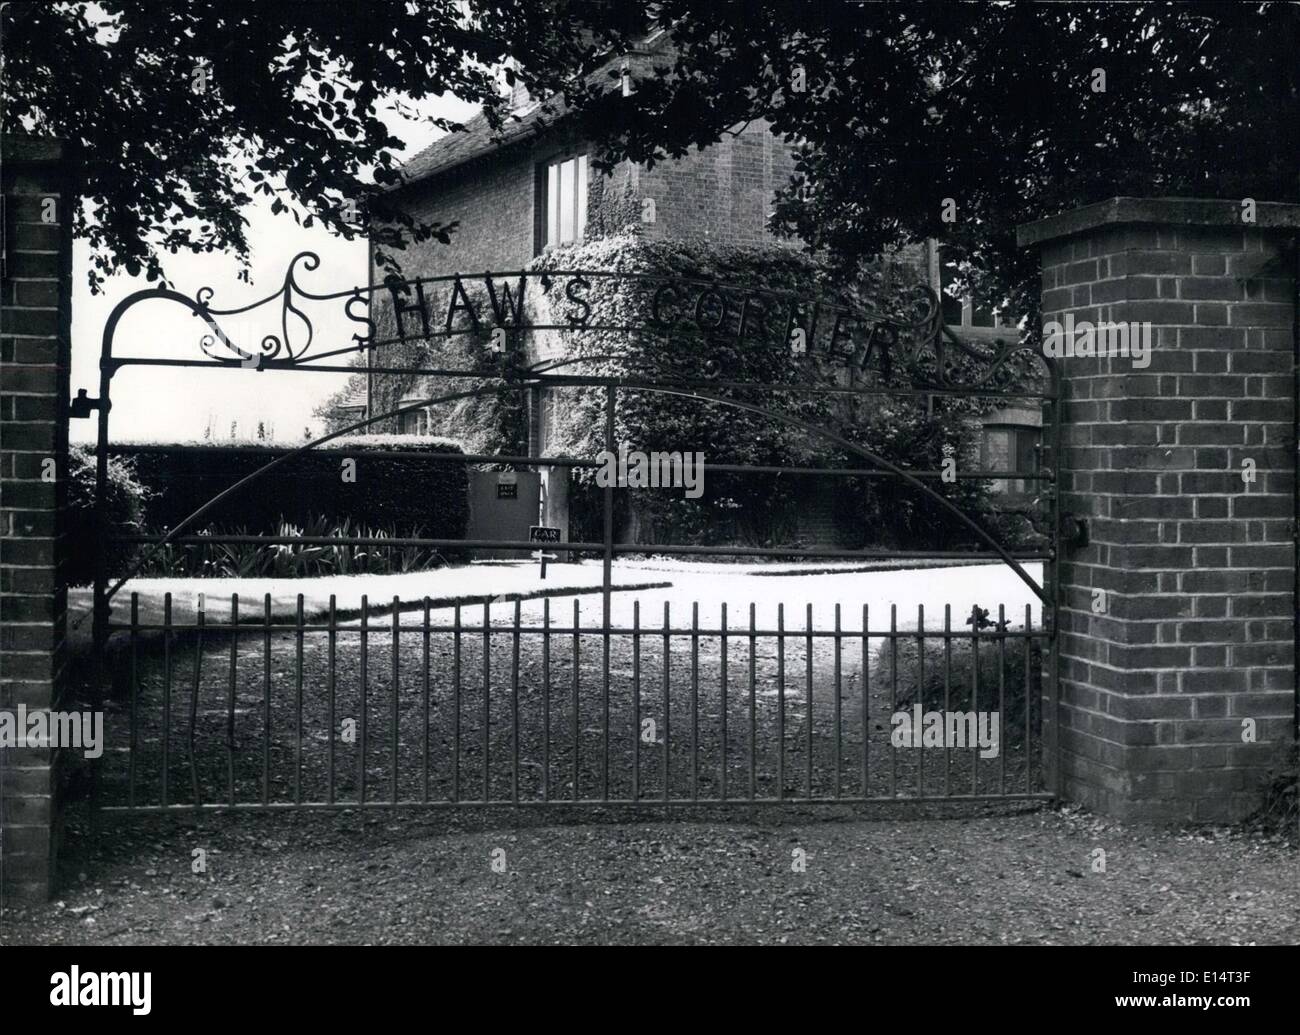 Apr. 18, 2012 - La grande cancellata in ferro battuto con il mondo di ''Shaw's Corner'' e l'ingresso della casa del villaggio di Ayot St Lawrence. Foto Stock